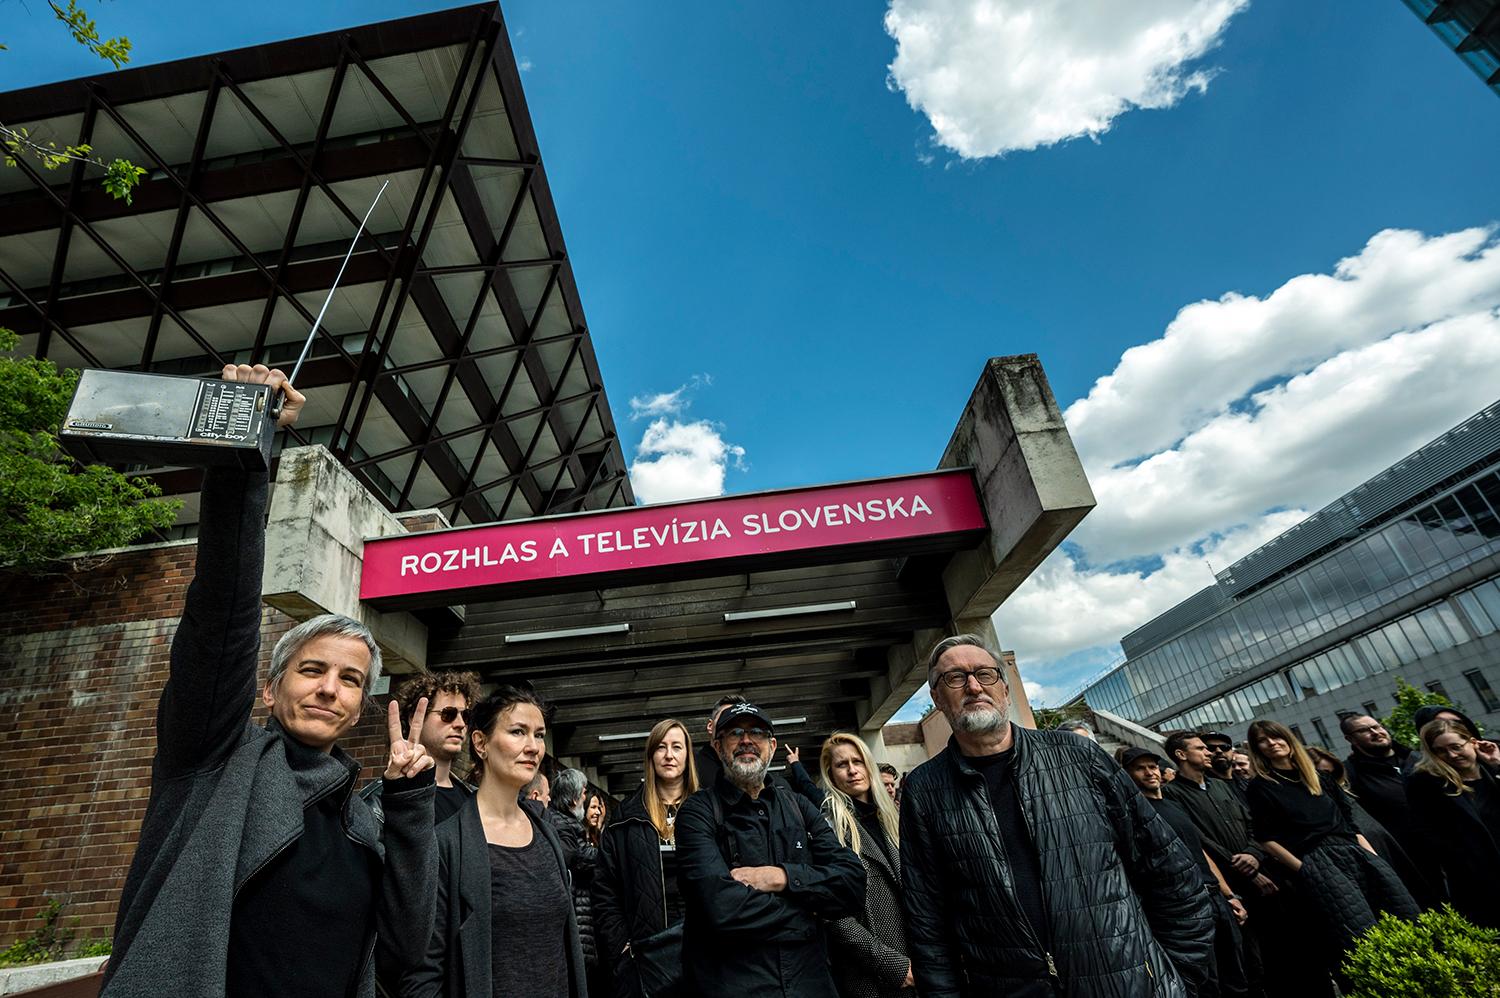 Protest zamestnancov RTVS pred budovou Slovenského rozhlasu ako reakcia na schválenie zákona, ktorý ruší Rozhlas a televíziu Slovenska a nahrádza ju novou inštitúciou Slovenská televízia a rozhlas (STVR).